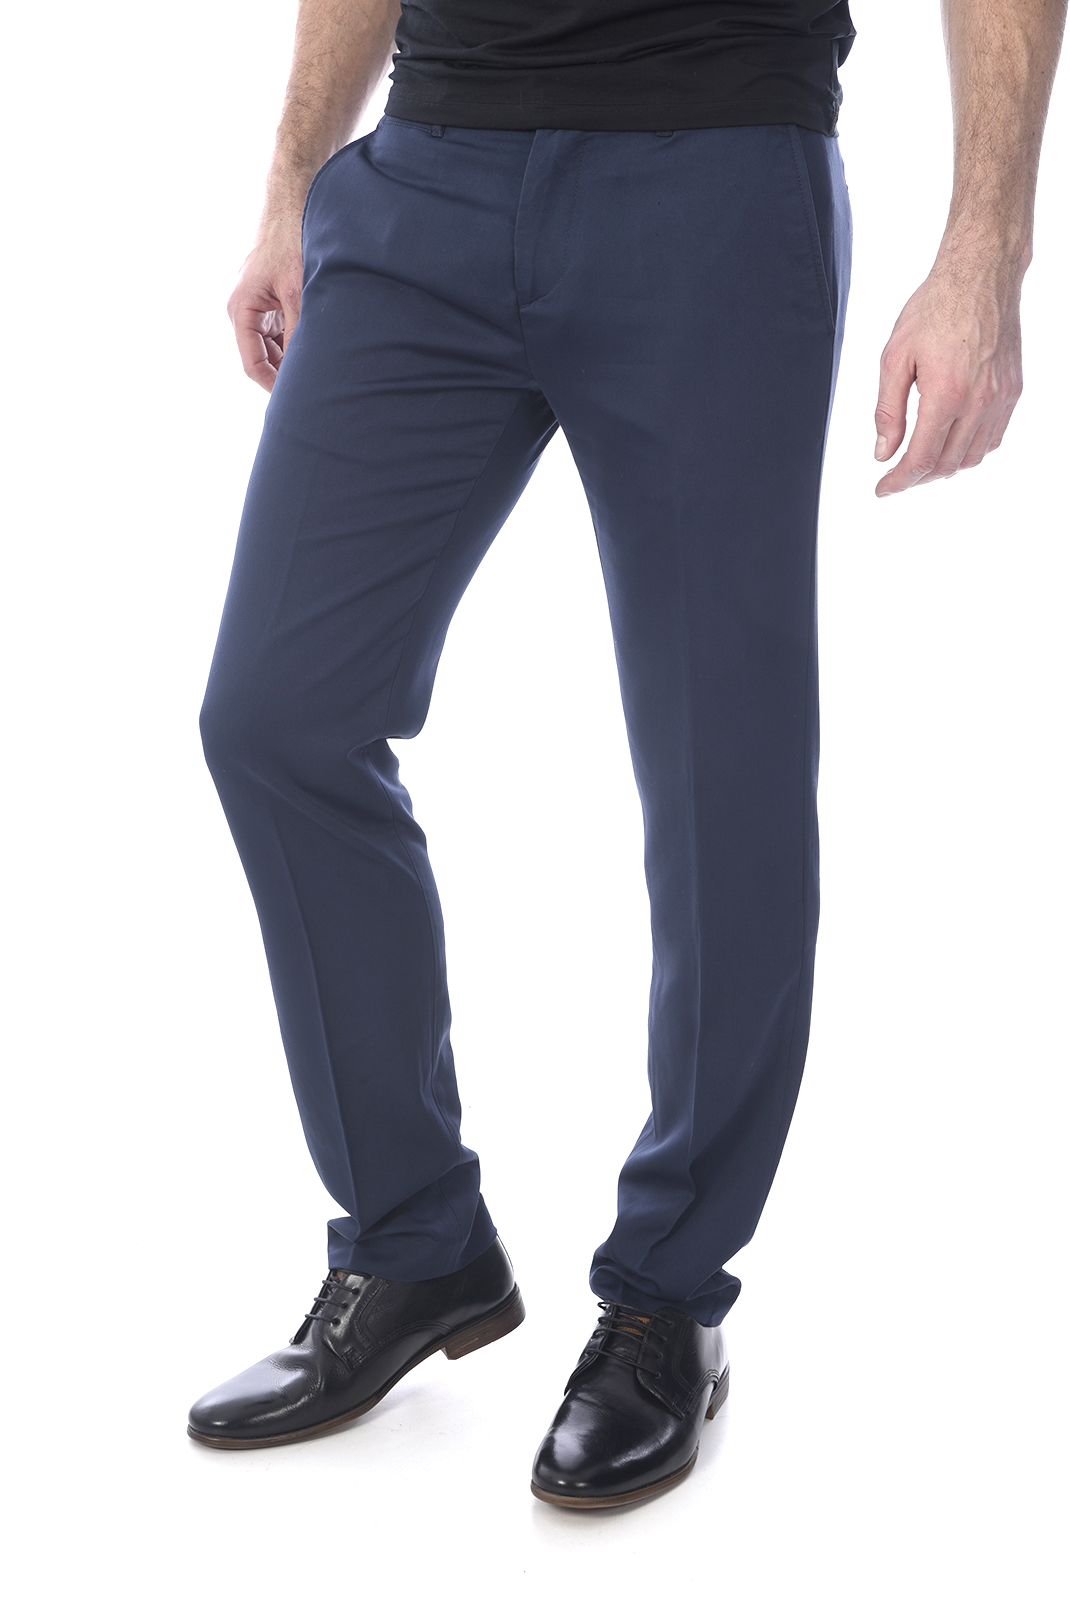 Pantalon bleu stretch homme - Guess M73b17 